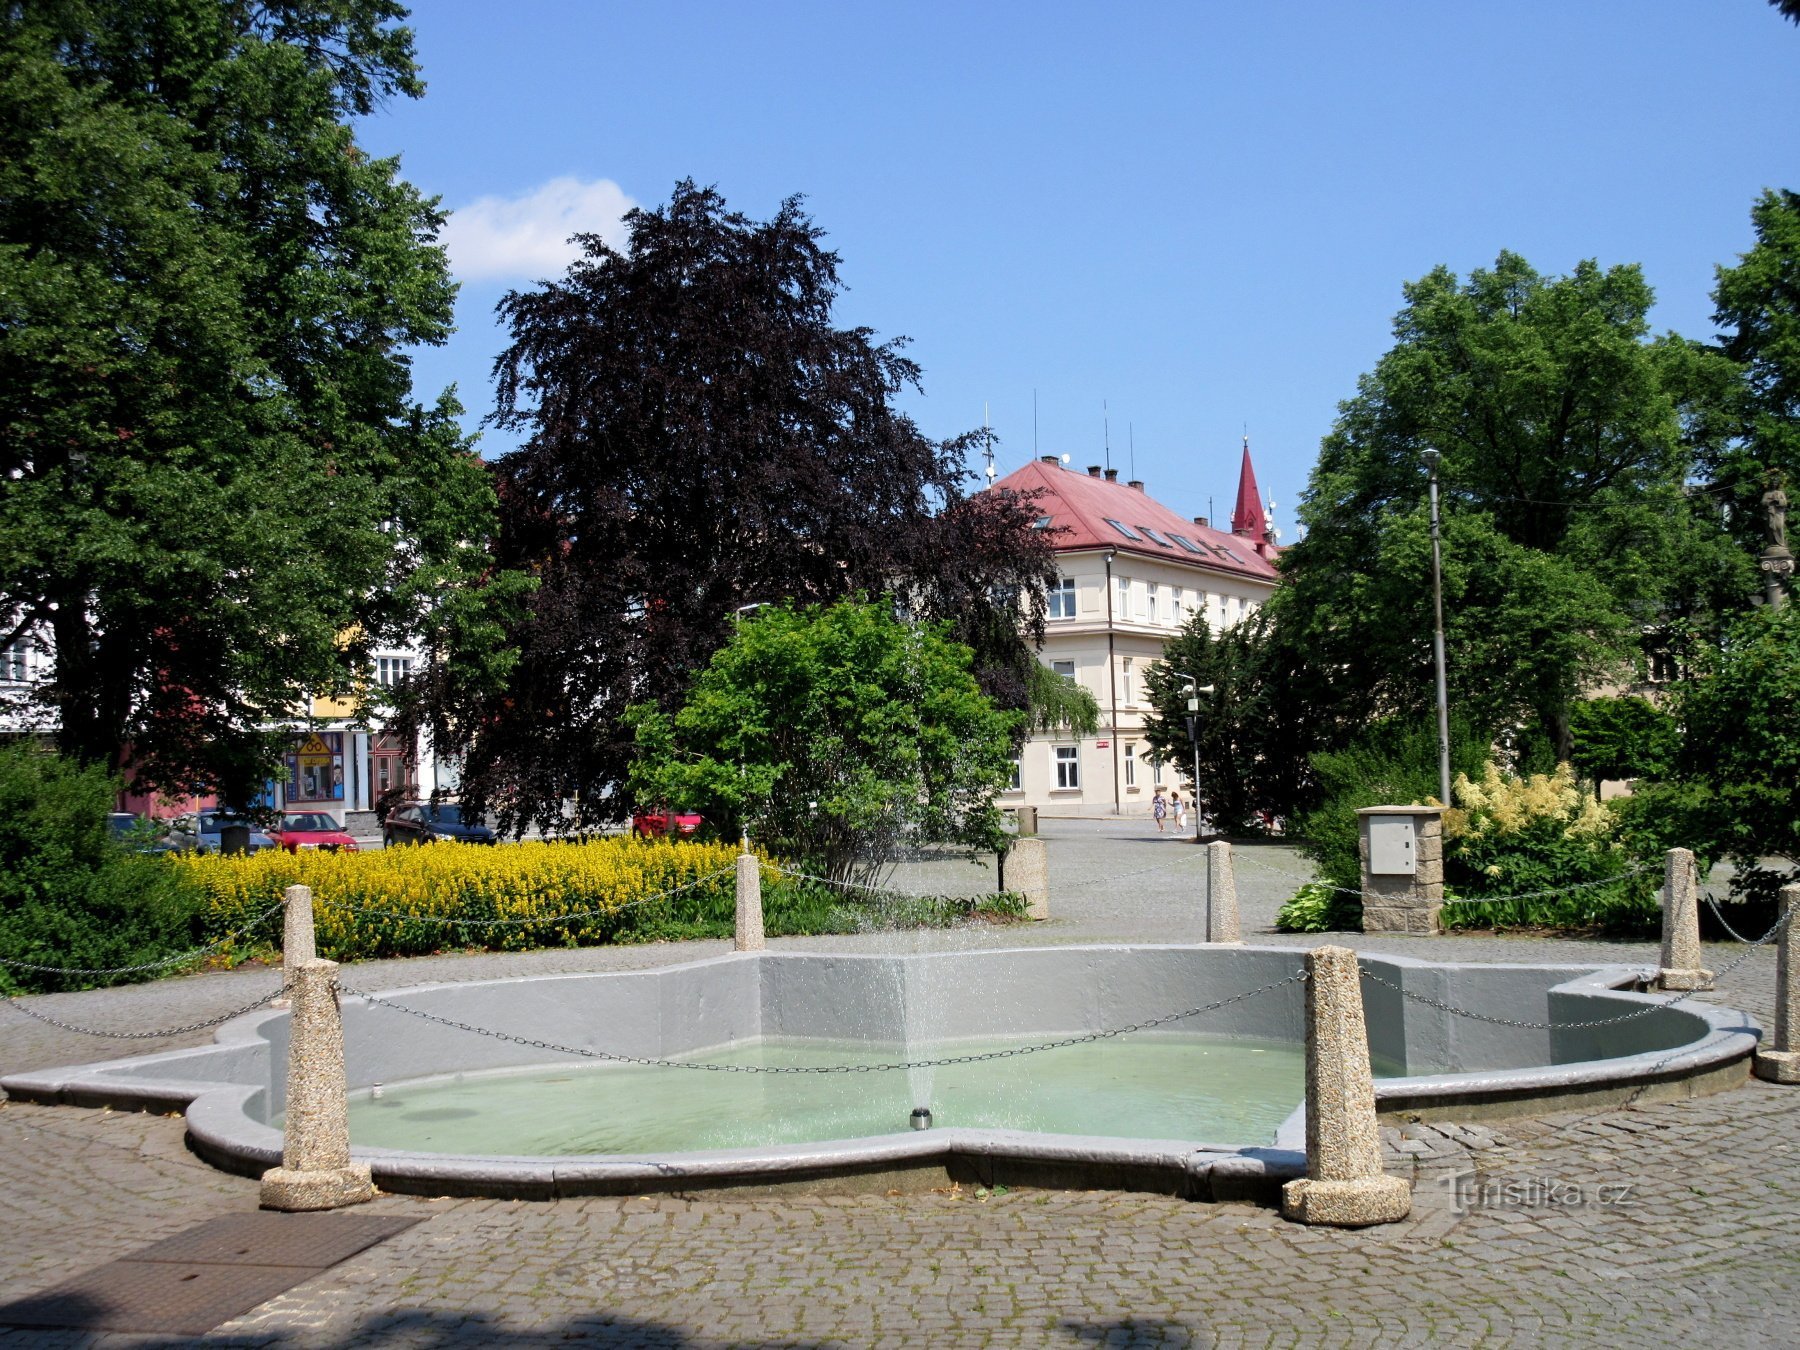 Chotěboř – historic center, castle, brewery